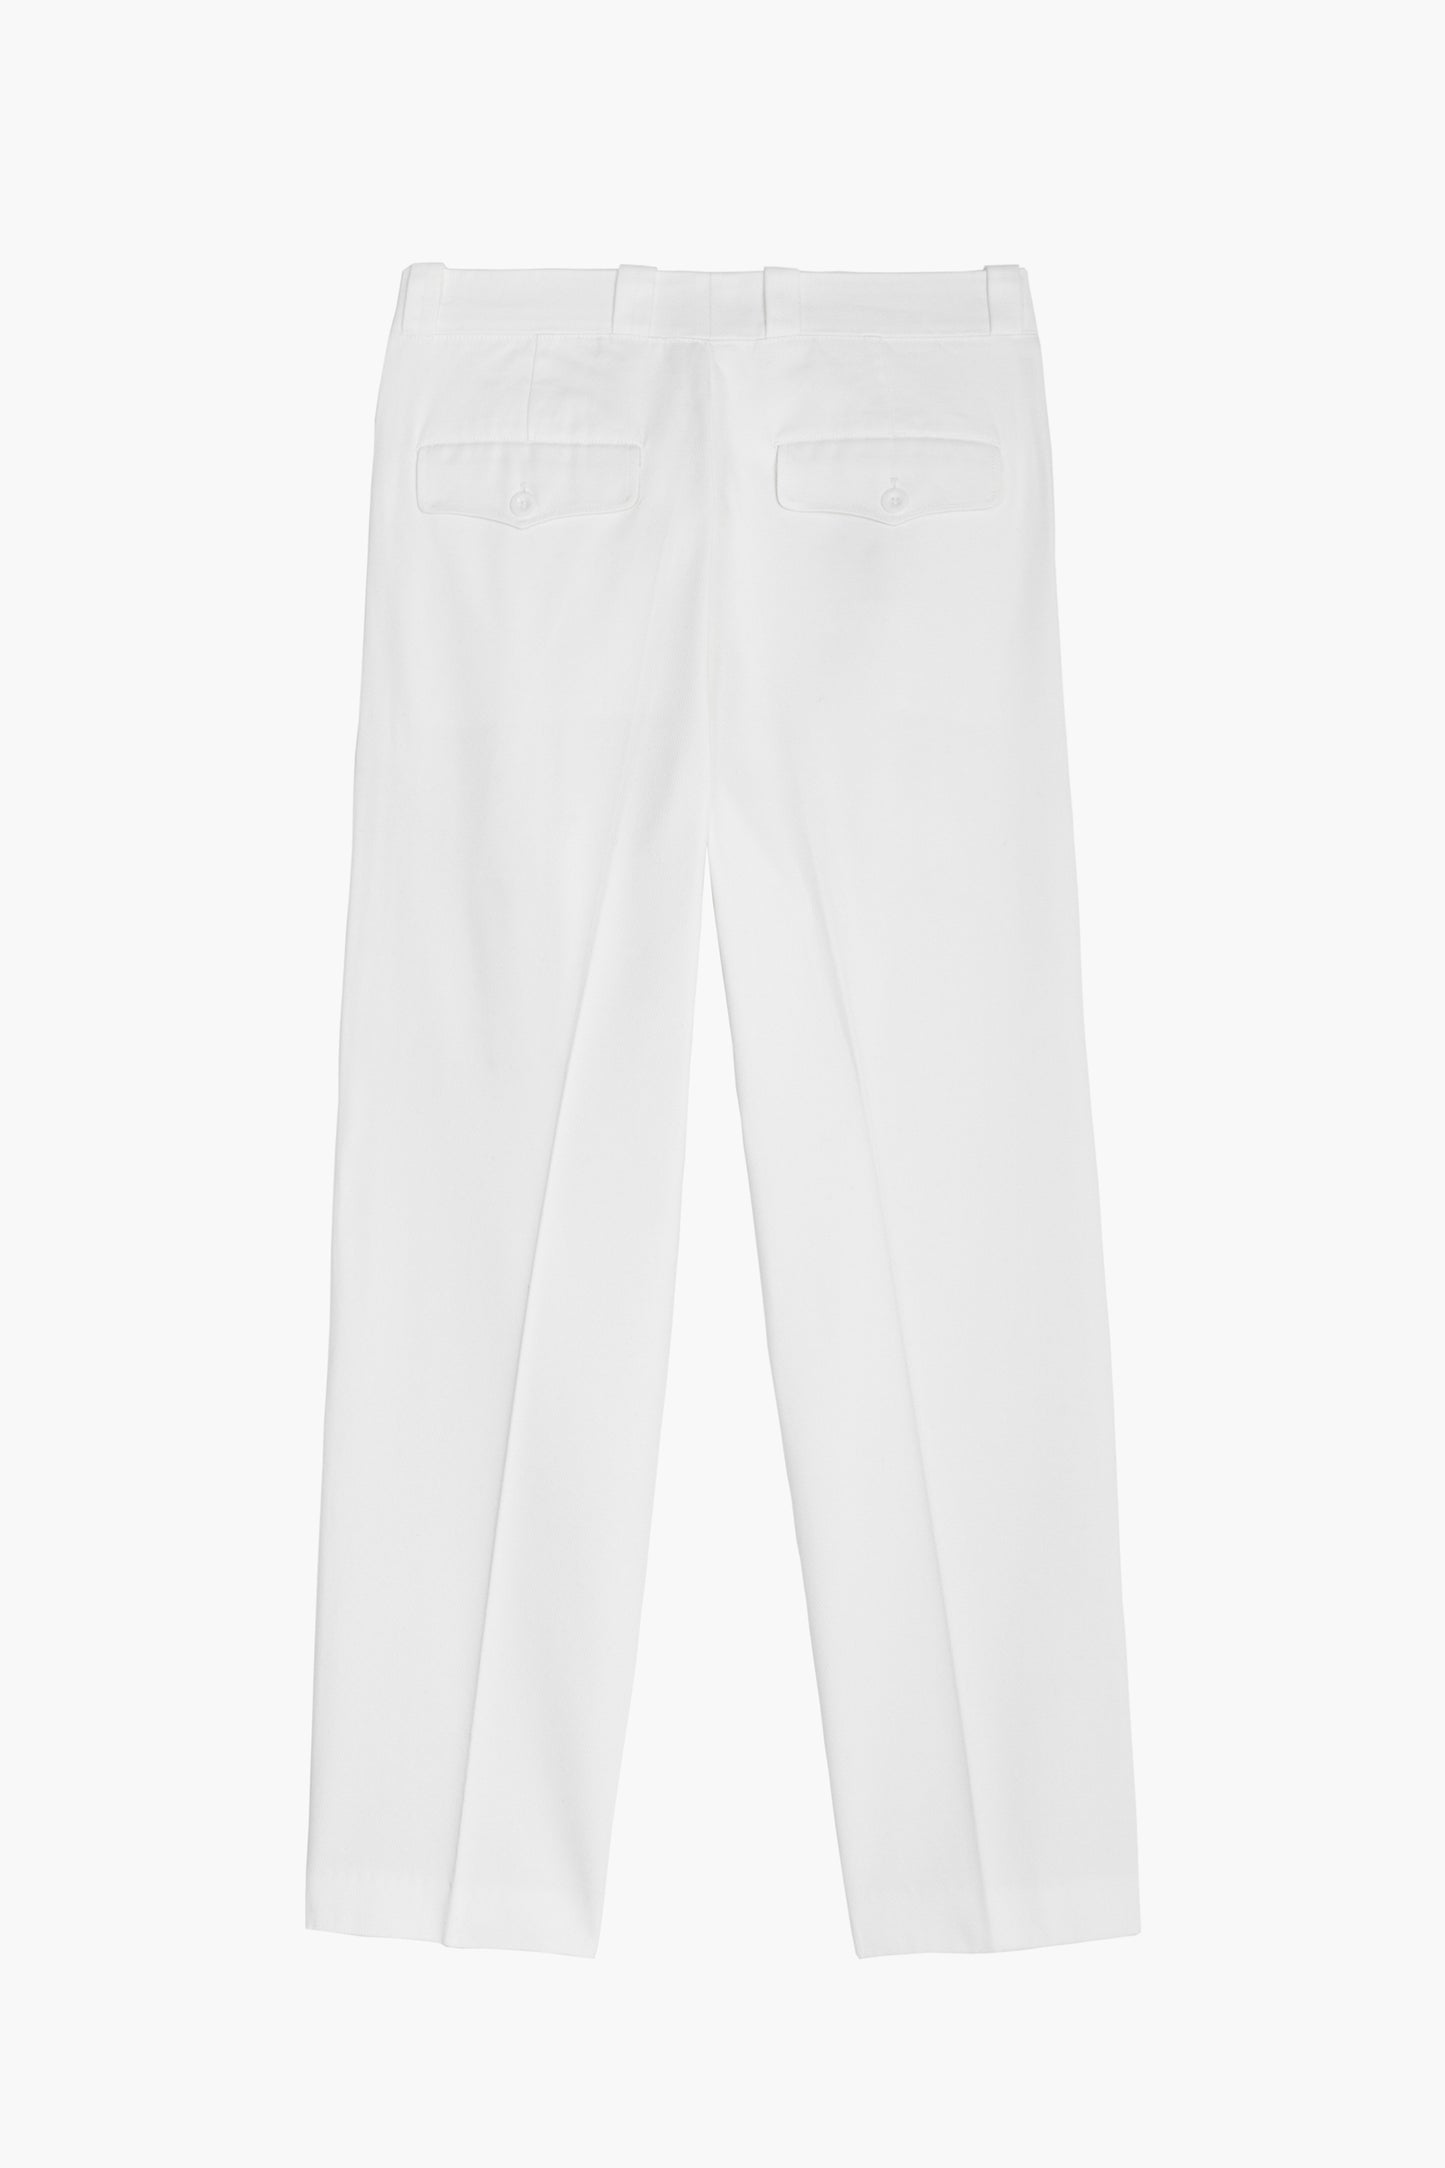 Pantalon French Military - Coton Blanc